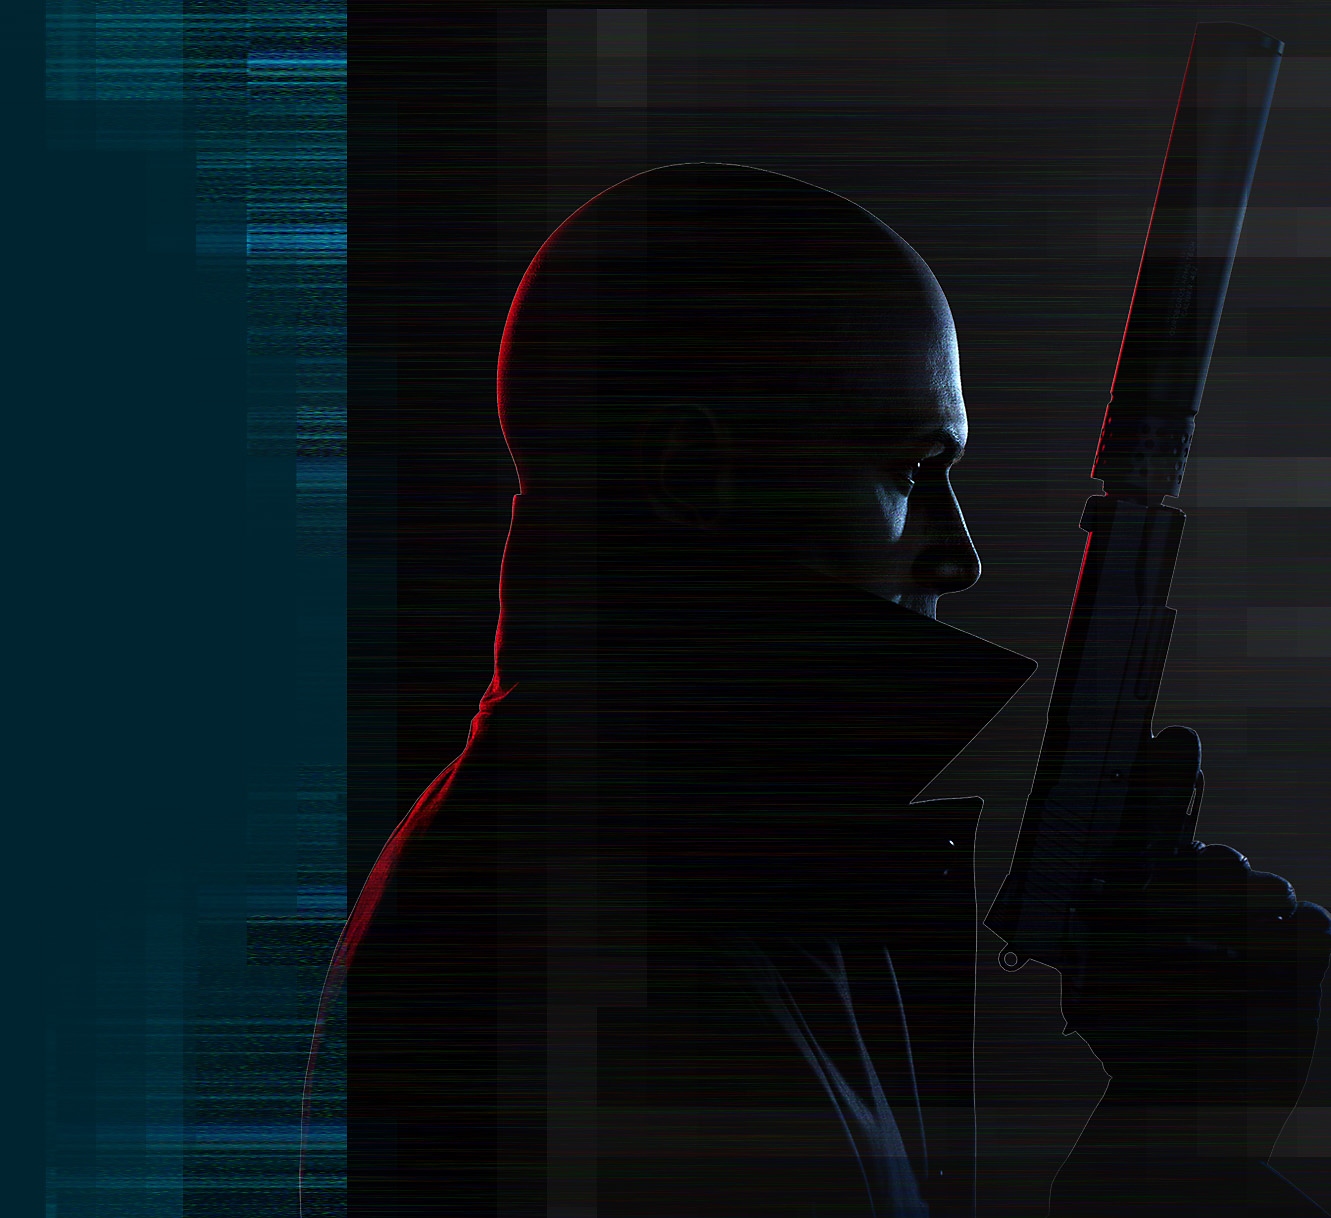 Künstlerische Darstellung des Charakters "Agent 47" aus Hitman 3, der eine schallgedämpfte Pistole hält